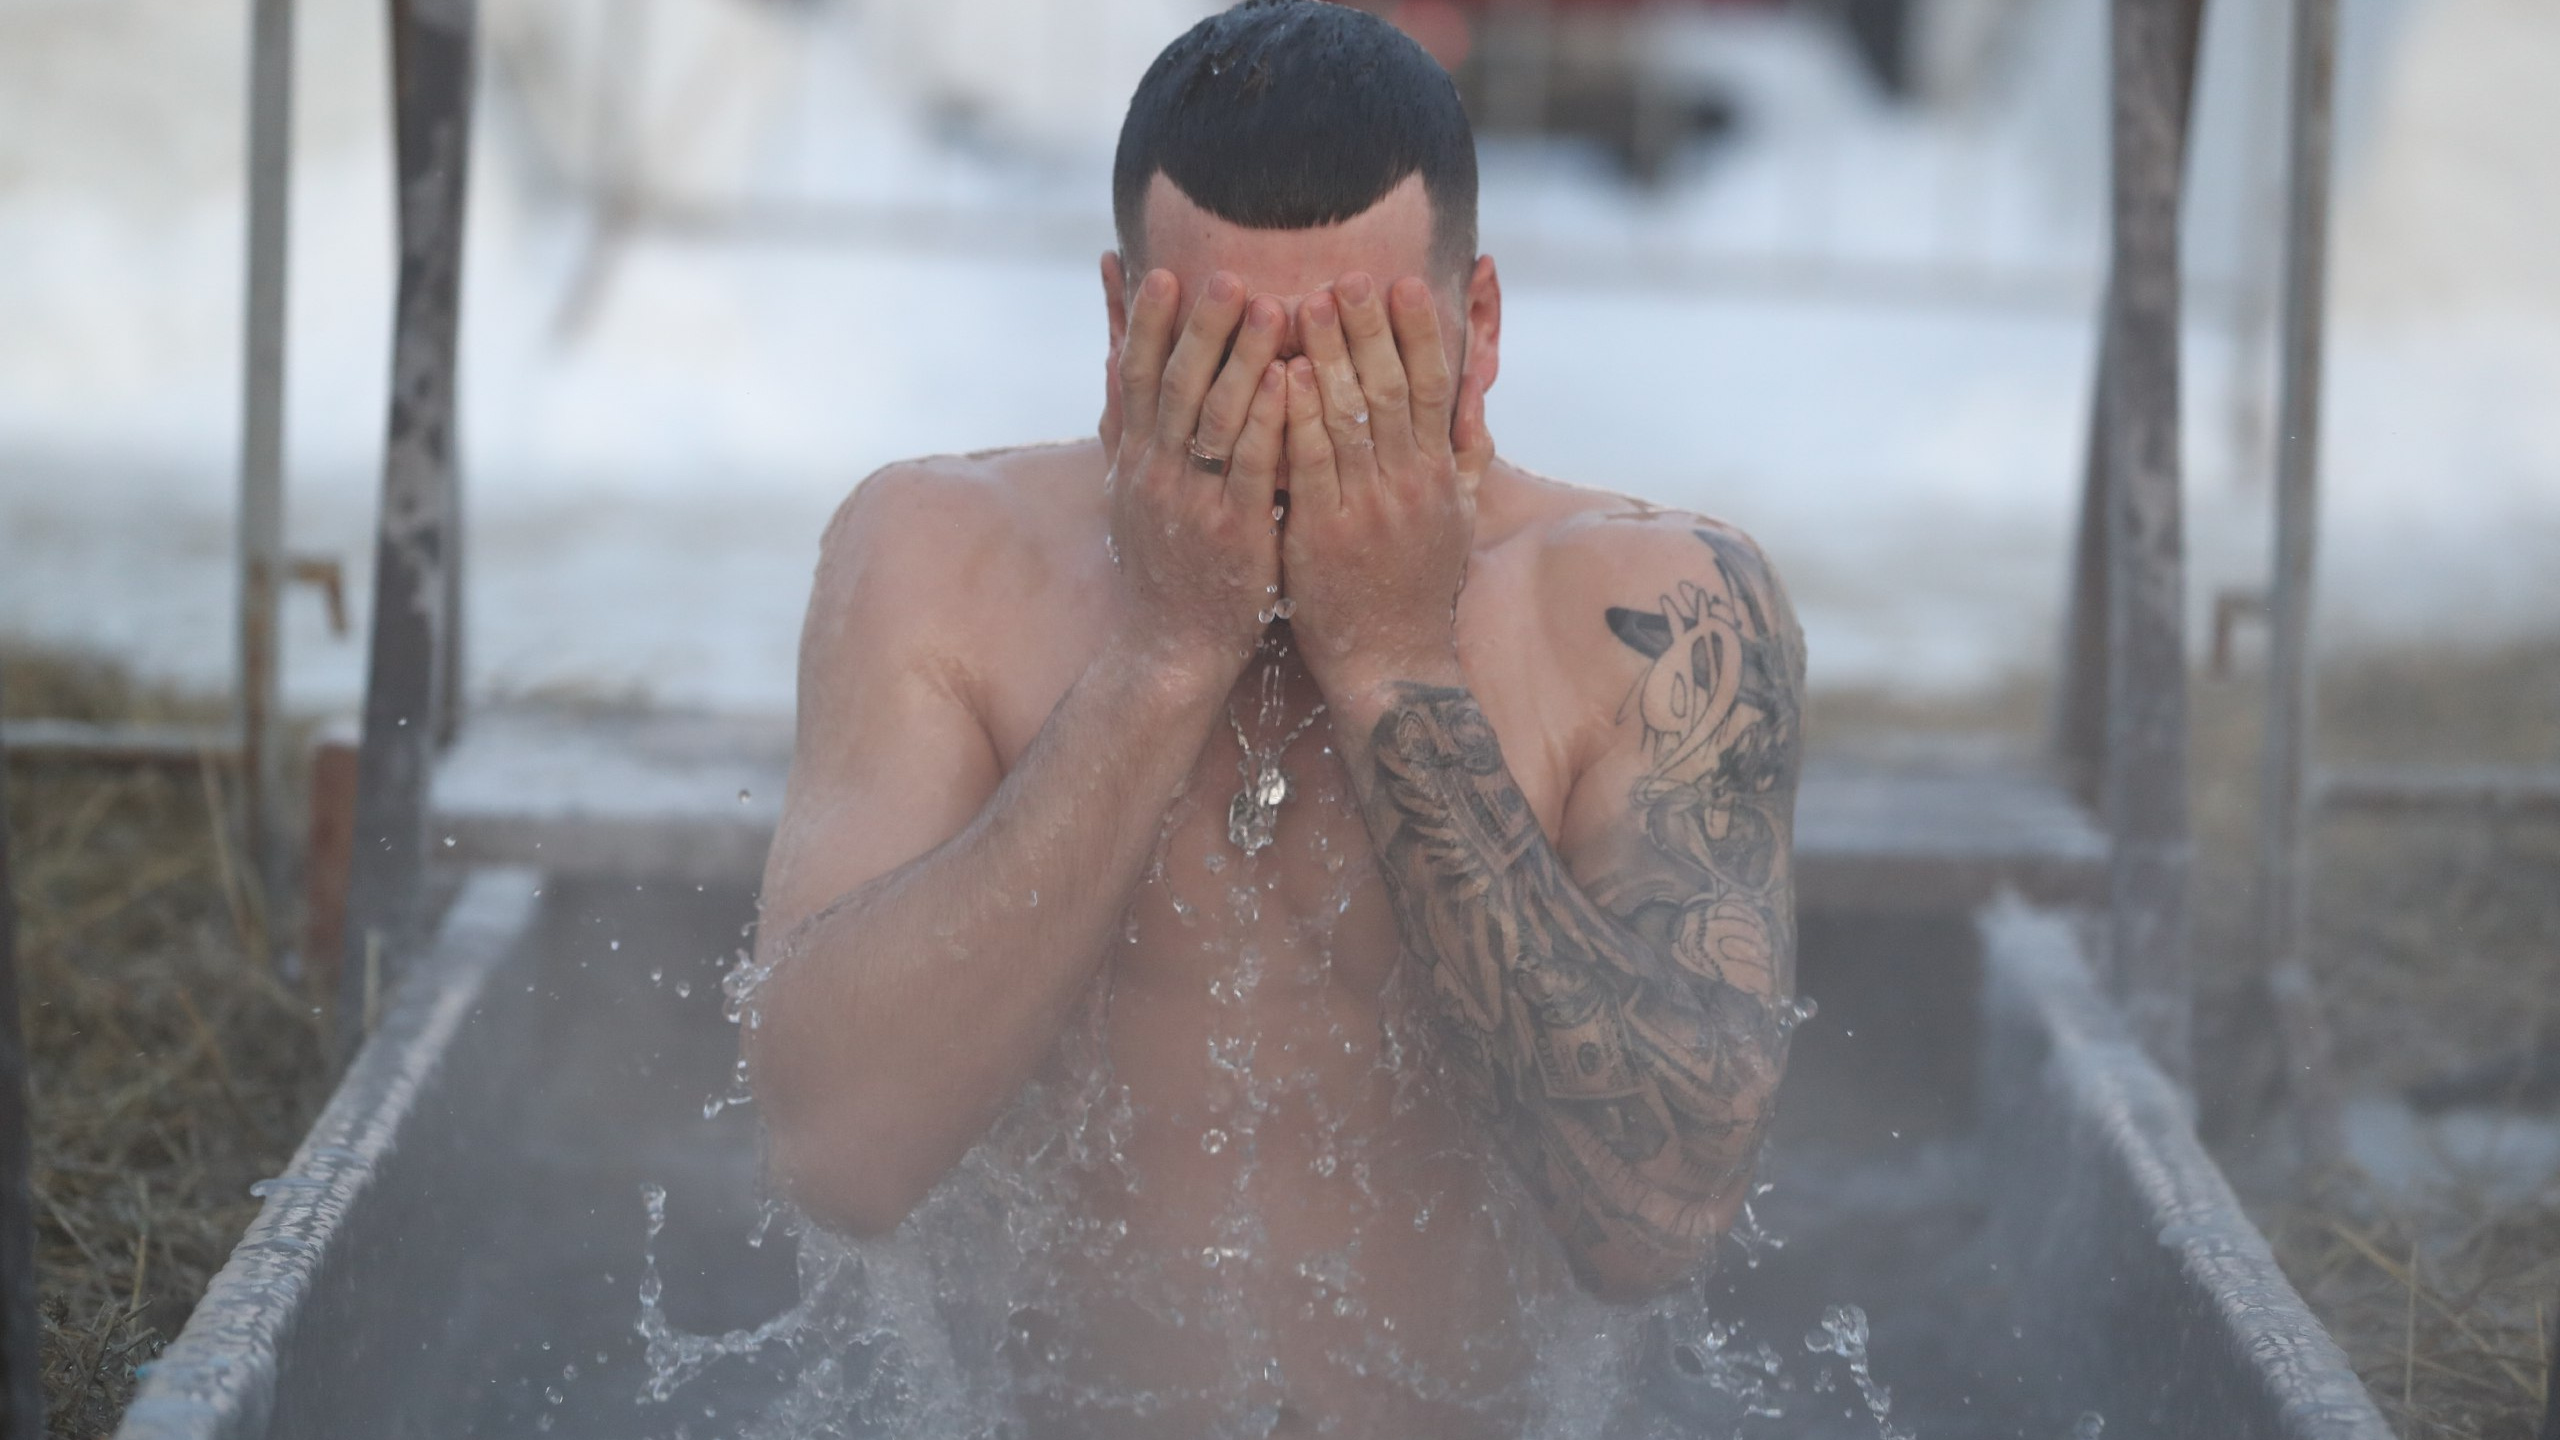 Горы мышц и крутые тату: фото сибиряков, которые рискнули окунуться в ледяную воду на Крещение